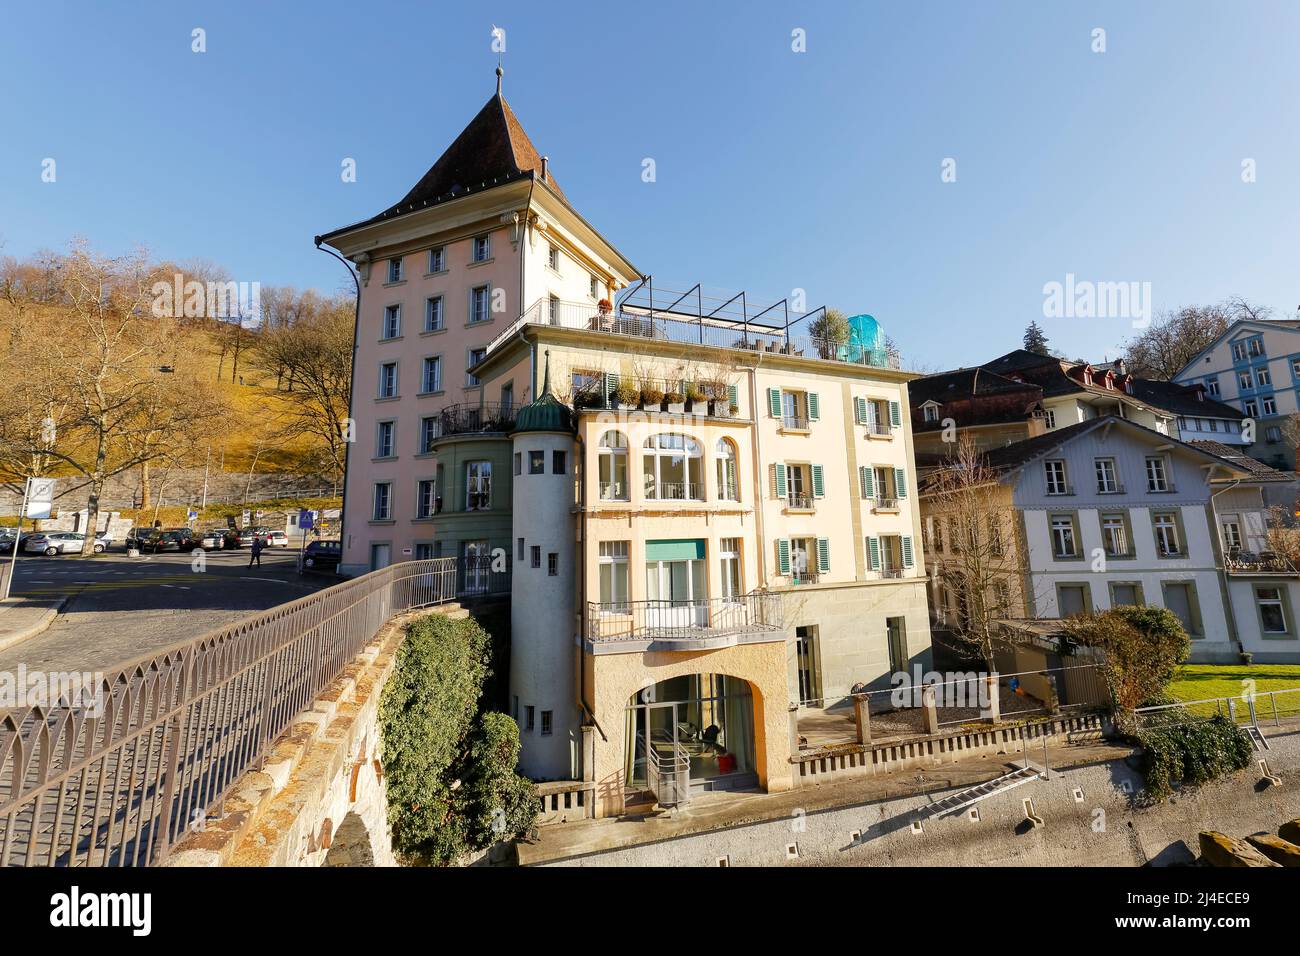 Berna, Suiza - 26 de diciembre de 2015: Casa a orillas del río Aare en el casco antiguo. Es visible desde el puente de la puerta inferior, que es un Foto de stock